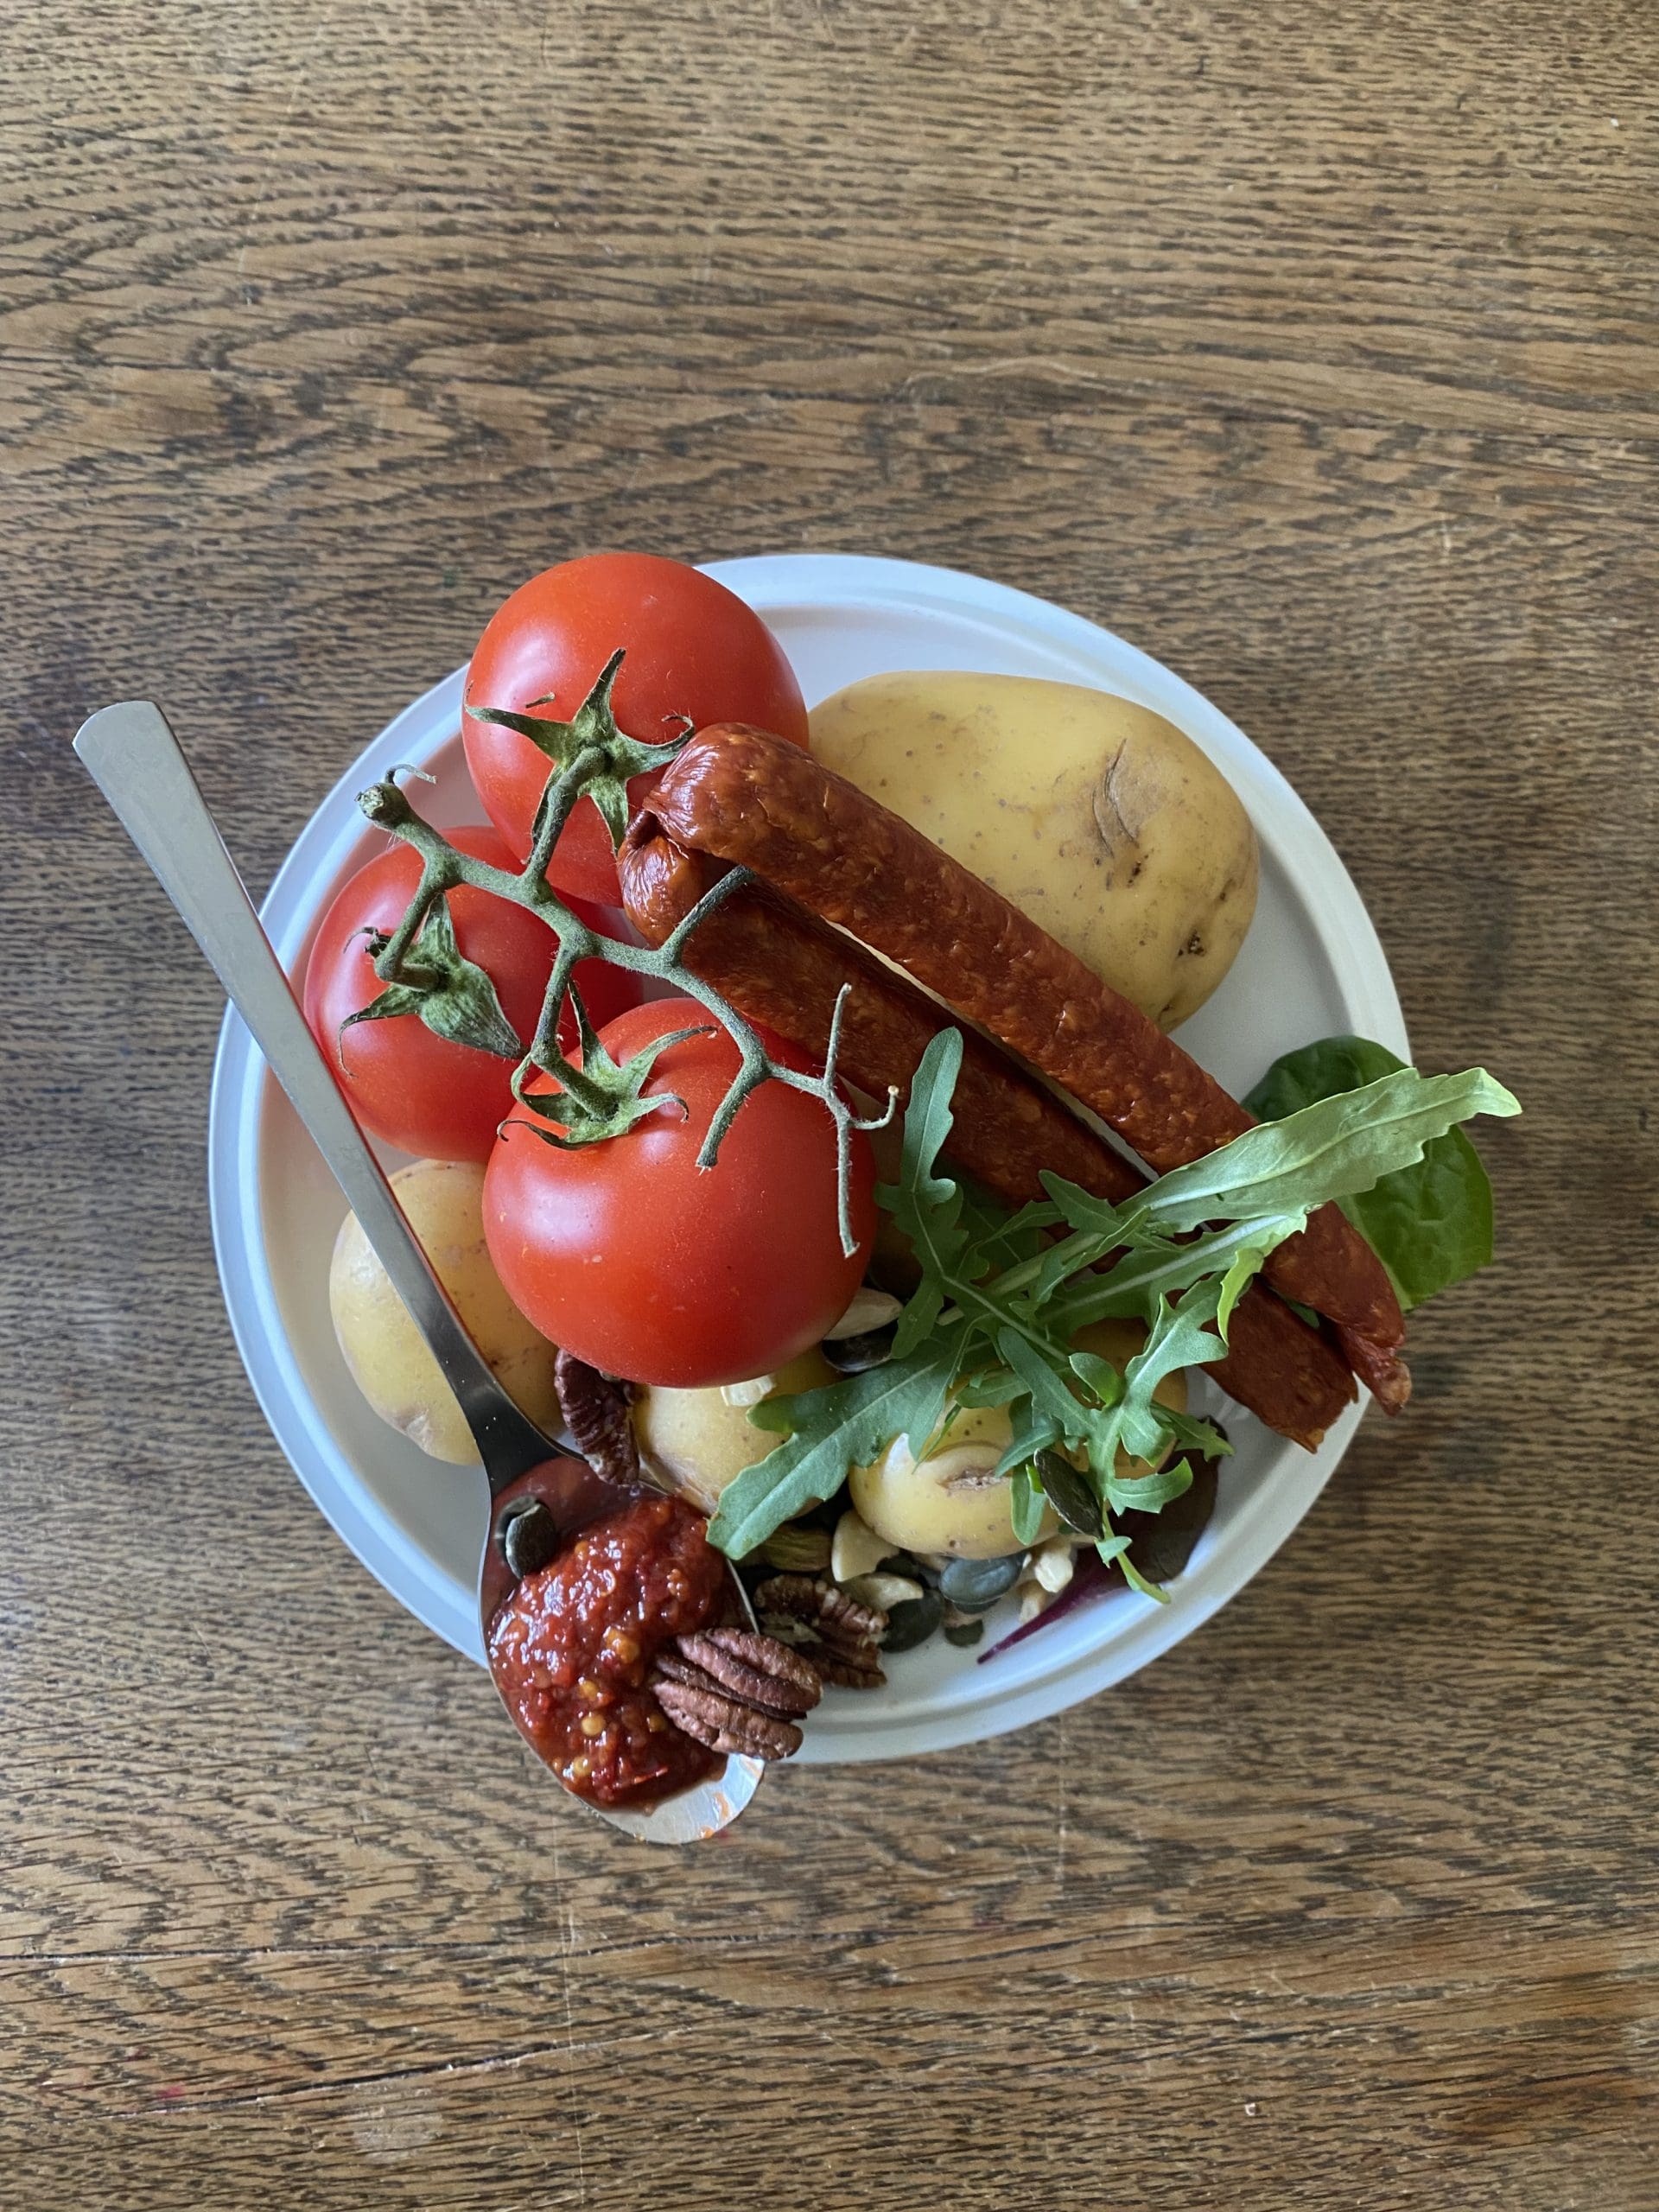 Auf dem Bild ist eine Schüssel mit Essen abgehandelt. In der Schüssel befinden sich Tomaten, rohe Kartoffeln, zwei Würste, etwas Salat, und wenige Nüsse. Auf der Schüssel liegt ein Löffel mit einer roten Paste und einer Nuss.